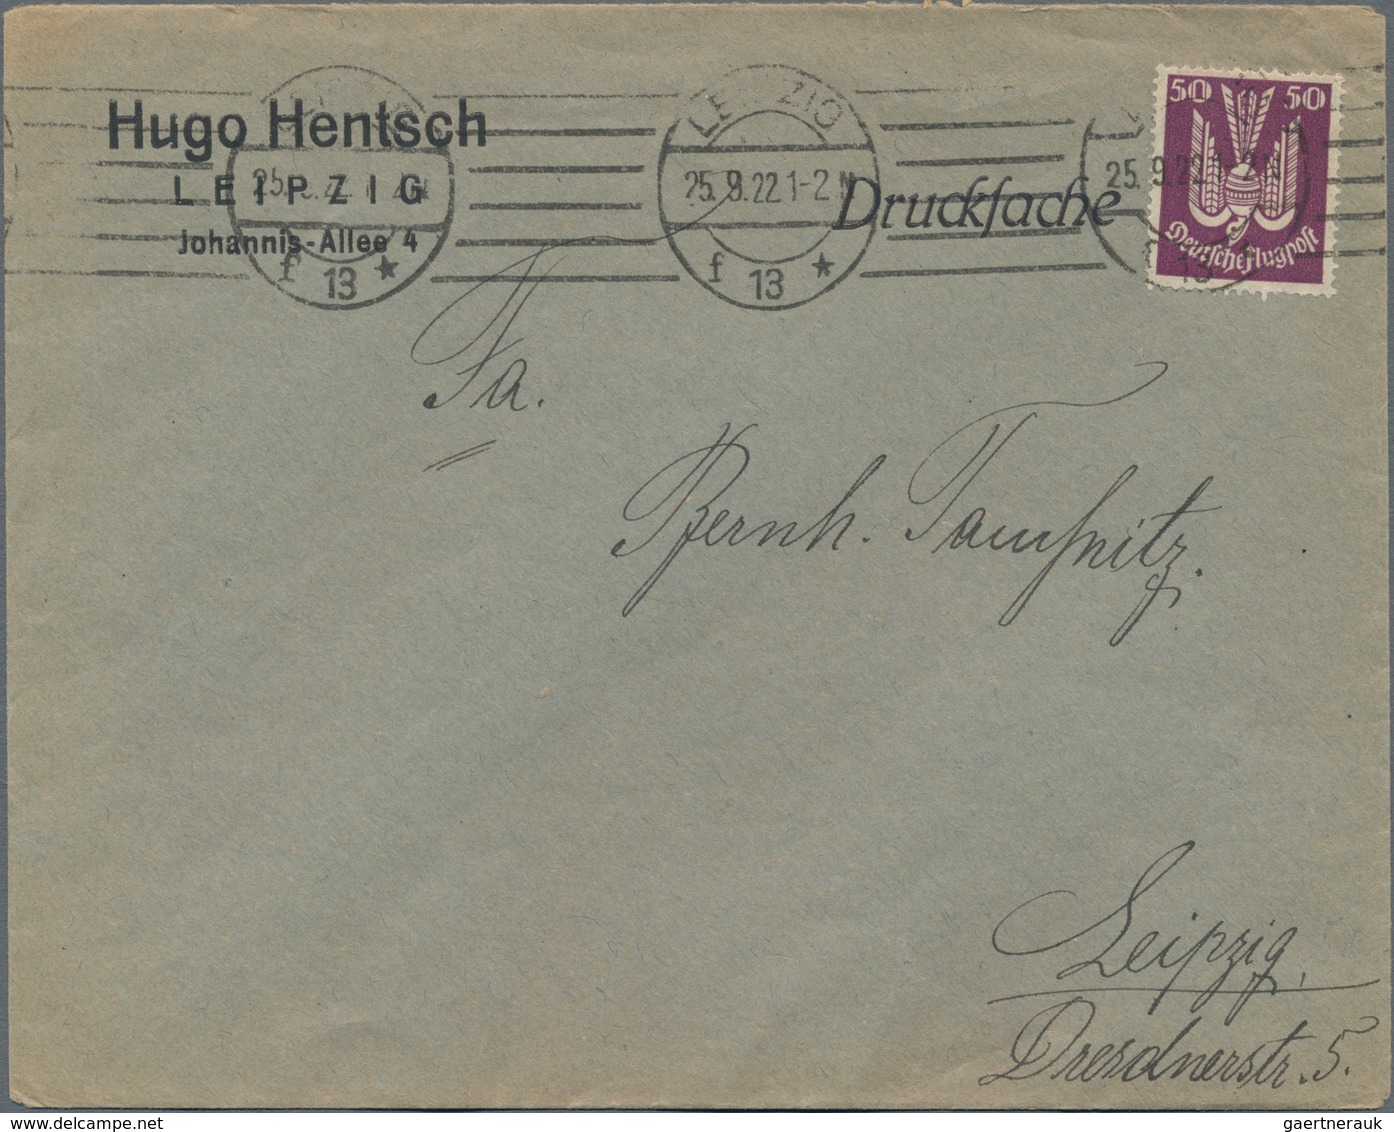 Deutsches Reich - Inflation: 1919-1923, ca. 200 Briefe und Karten, dabei bessere Frankaturen, Einsch